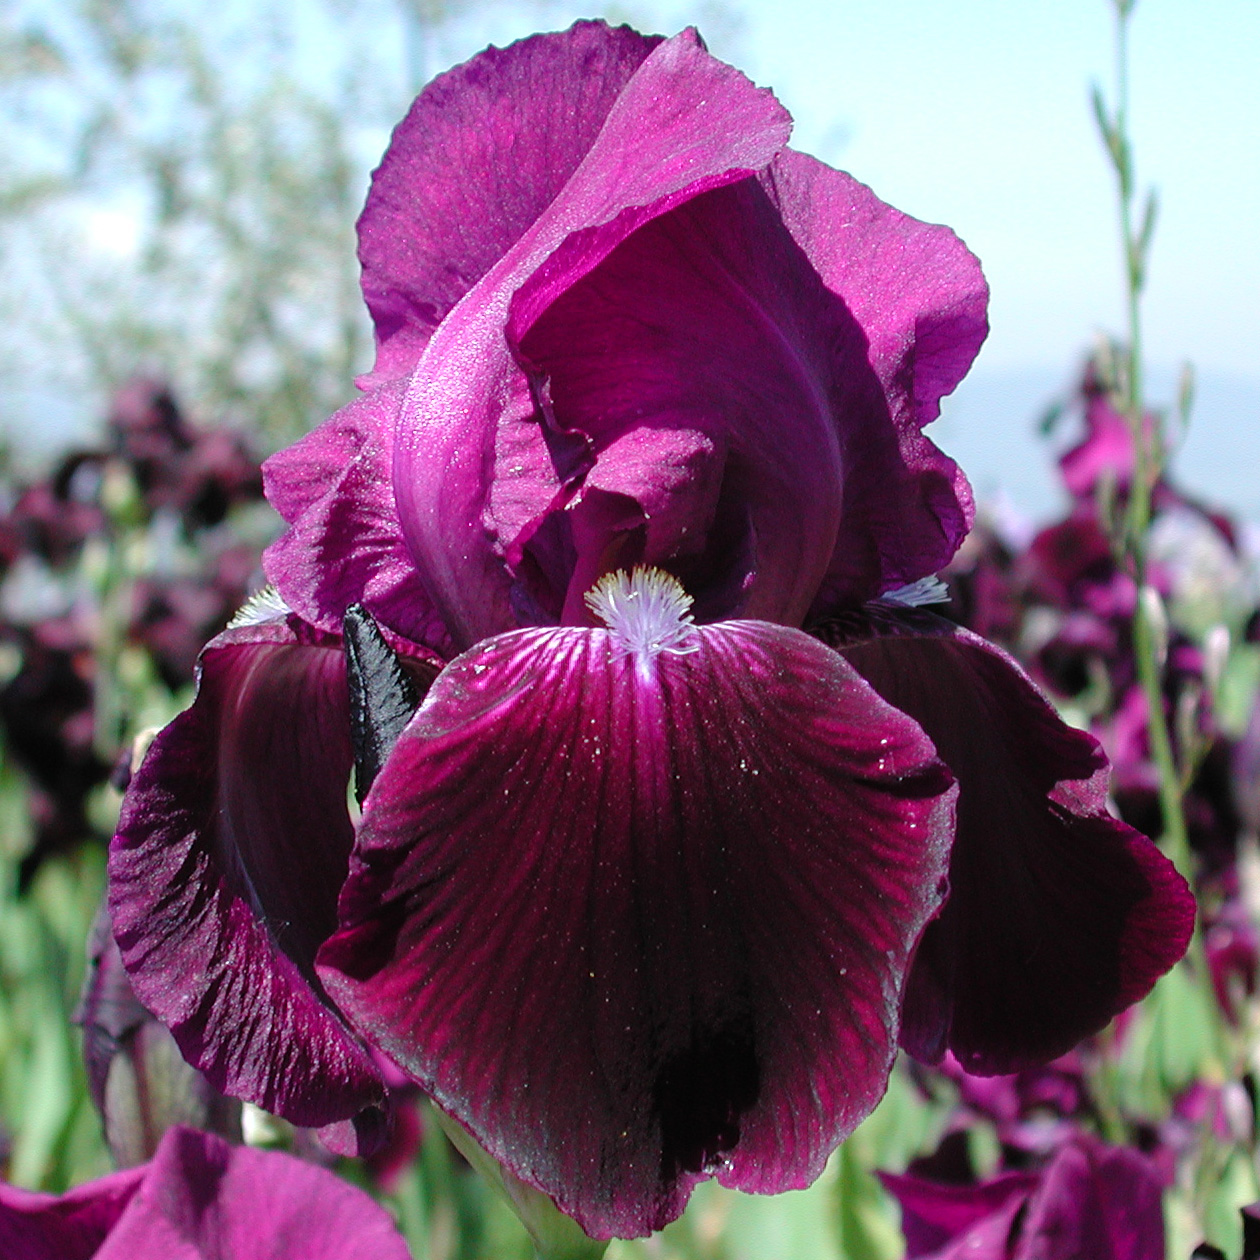 Iris with warm tones